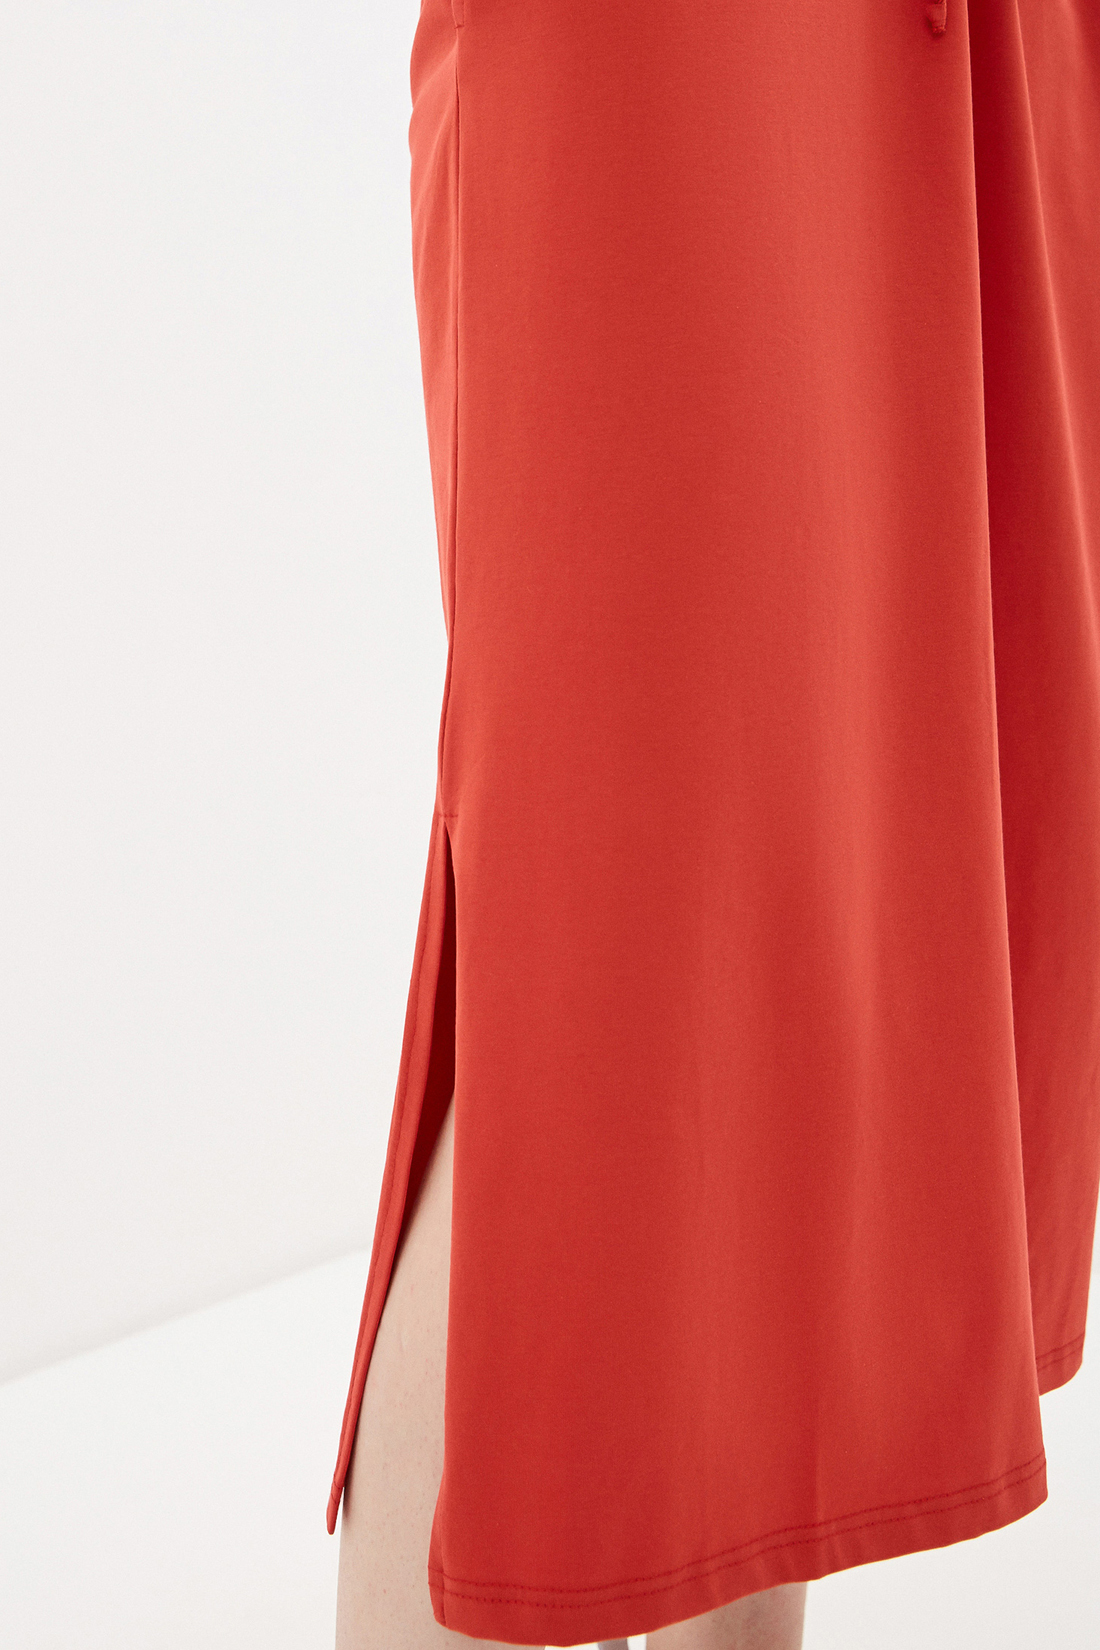 Трикотажное платье (арт. baon B450082), размер XS, цвет красный Трикотажное платье (арт. baon B450082) - фото 3